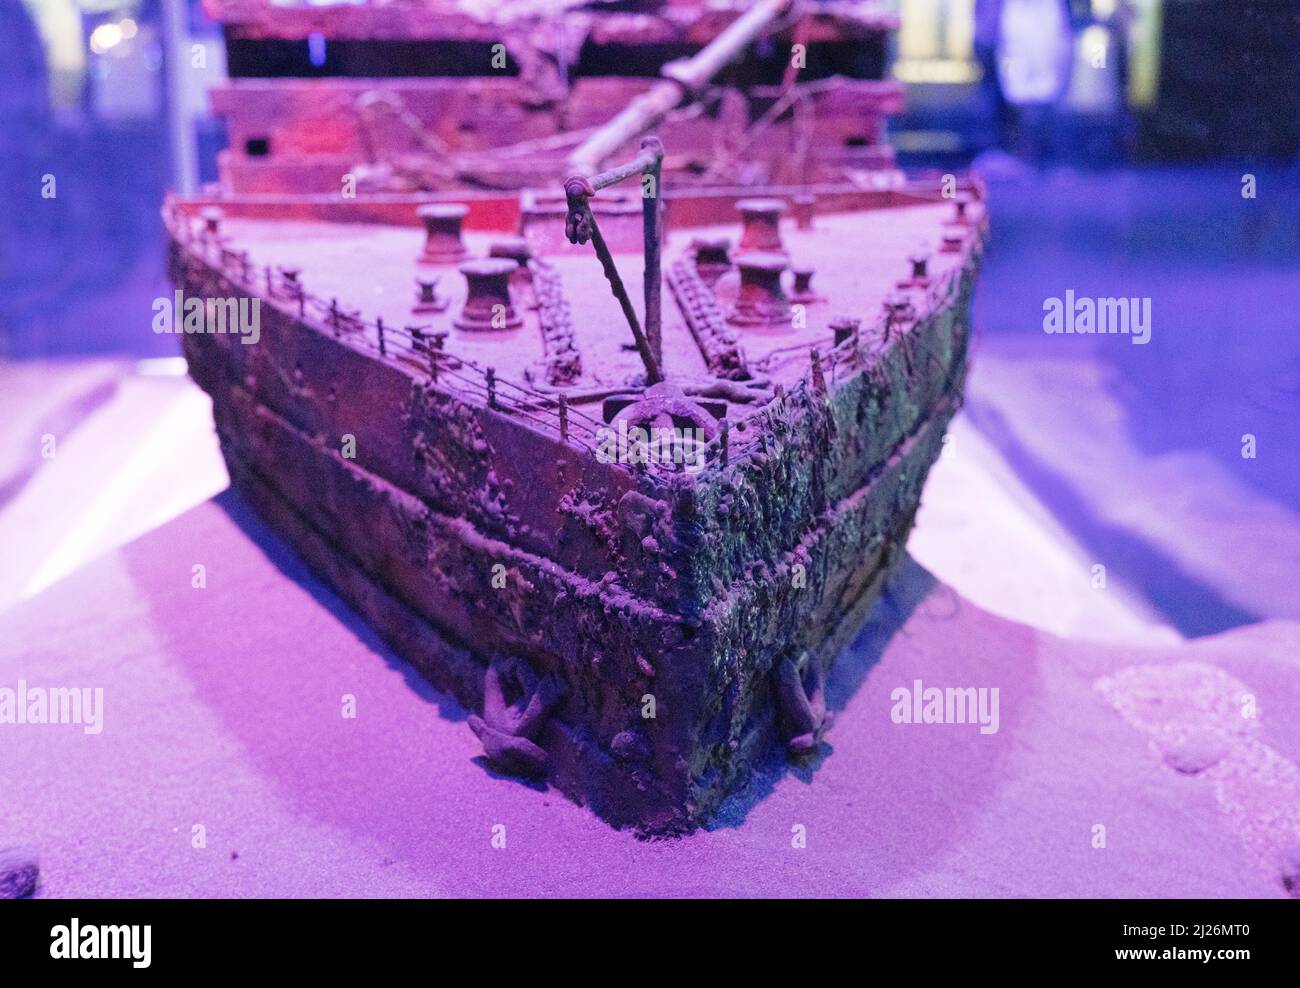 Le naufrage du Titanic; modèle de l'épave du RMS Titanic sous les fonds marins; The Titanic Exhibition, Londres UK Banque D'Images